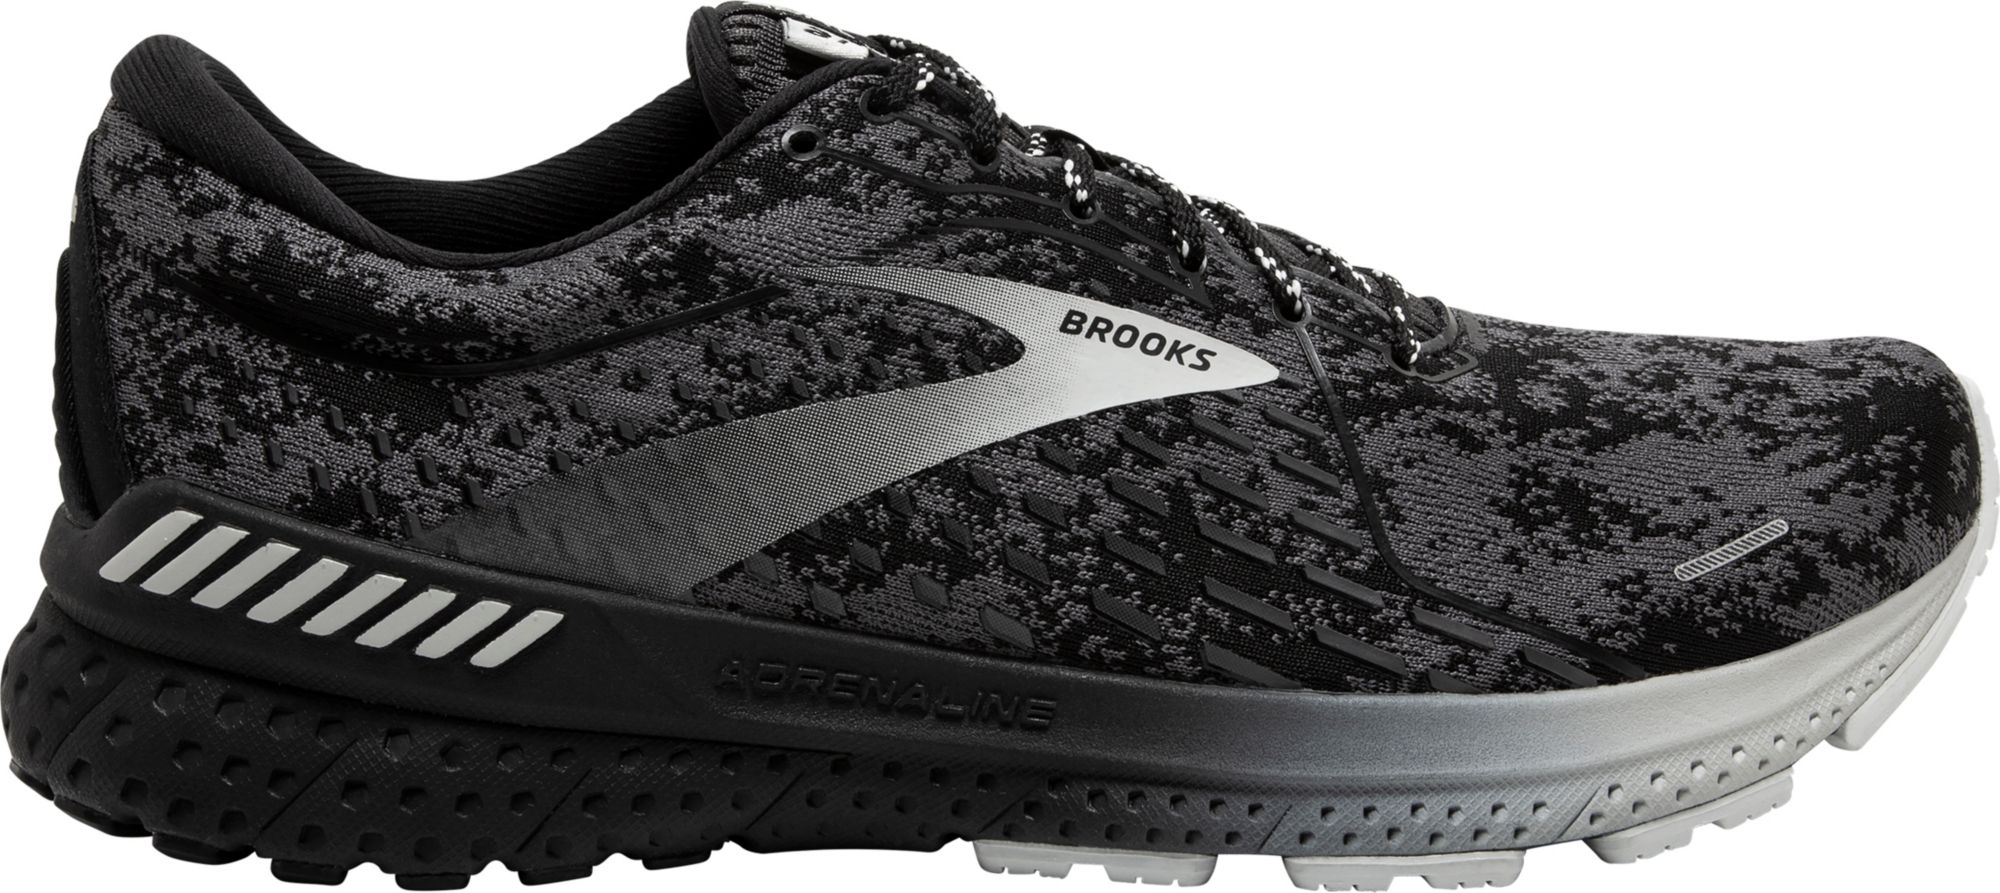 brooks black trainers